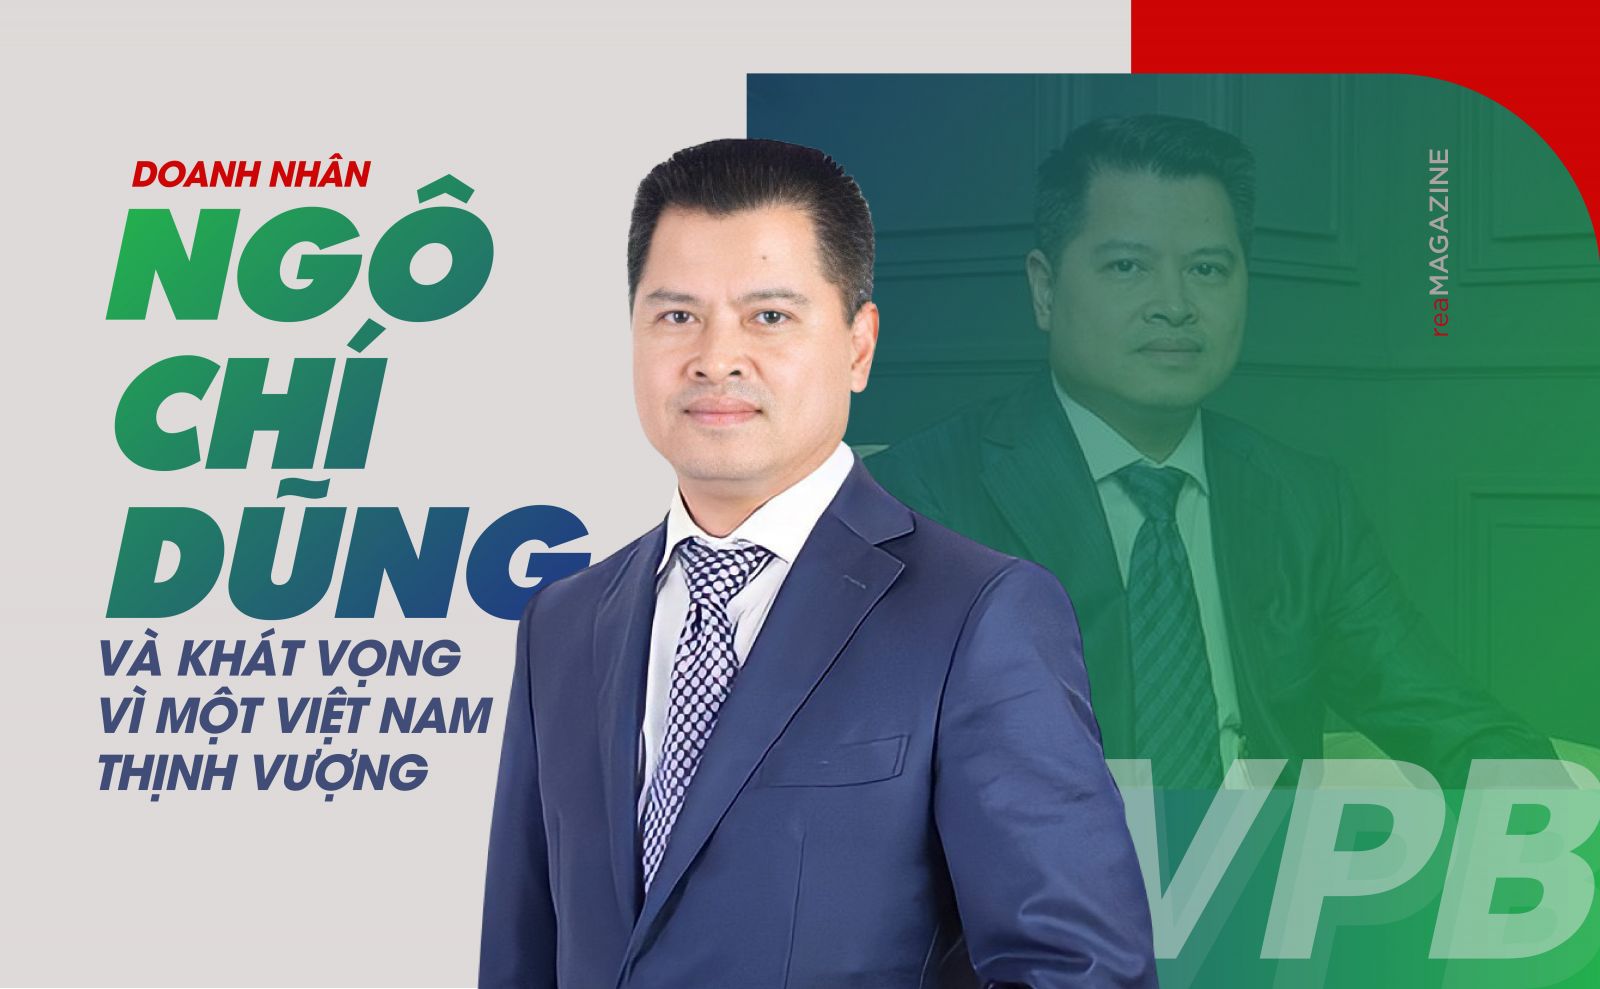 Tiểu sử doanh nhân Ngô Chí Dũng: Chủ tịch ngân hàng TMCP Việt Nam Thịnh Vượng(VPBank)